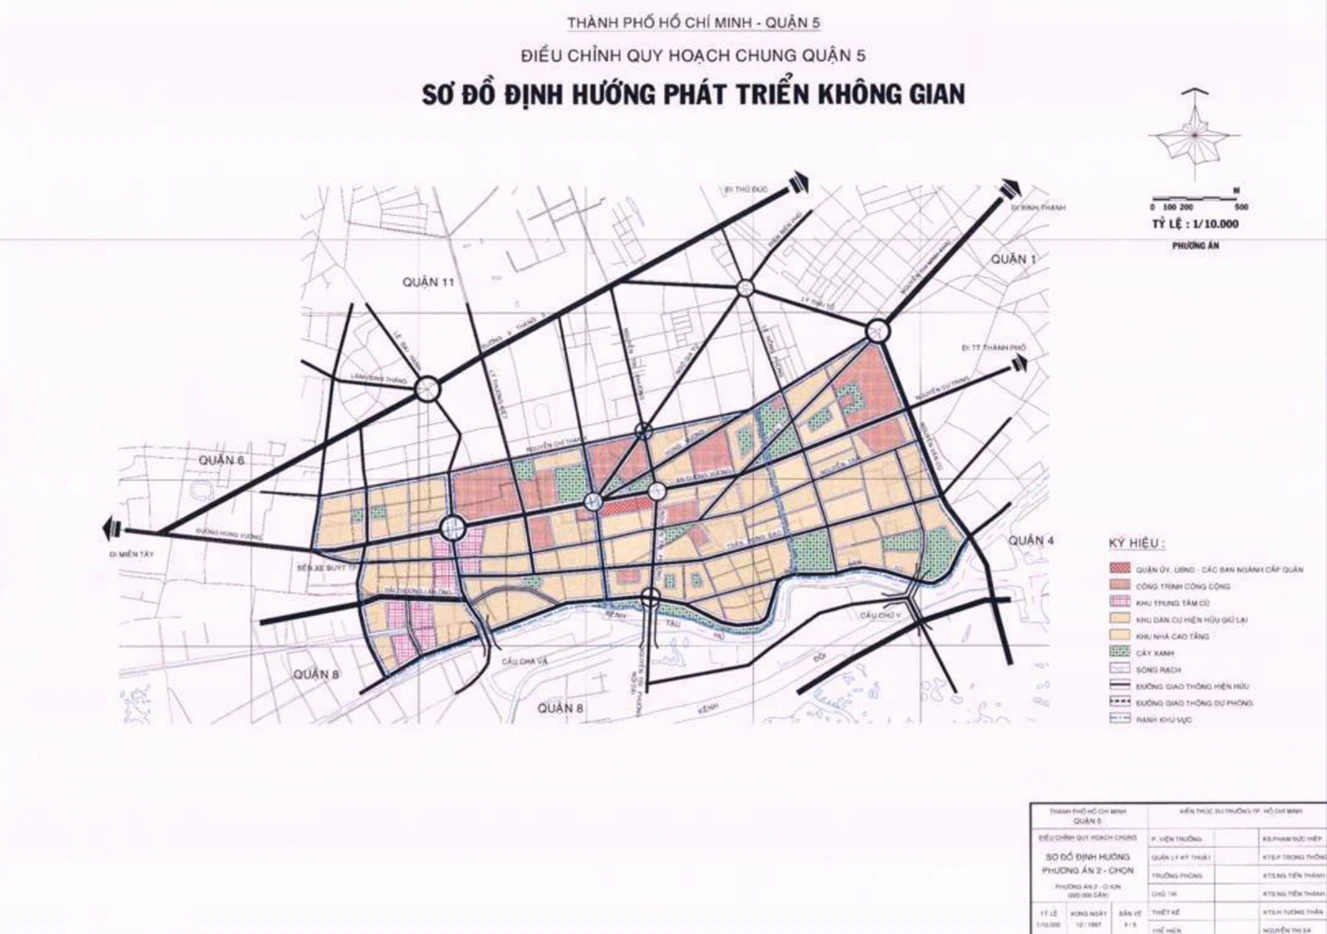 Bản đồ quy hoạch sử dụng đất Quận 5 TP HCM - Tương lai đến năm 2030: Quận 5 TP HCM có kế hoạch bền vững trong quy hoạch sử dụng đất, với mong muốn hiệu quả tối đa và phát triển tài nguyên. Hãy xem bản đồ quy hoạch sử dụng đất mới nhất và tìm kiếm những cơ hội tiềm năng của tương lai.